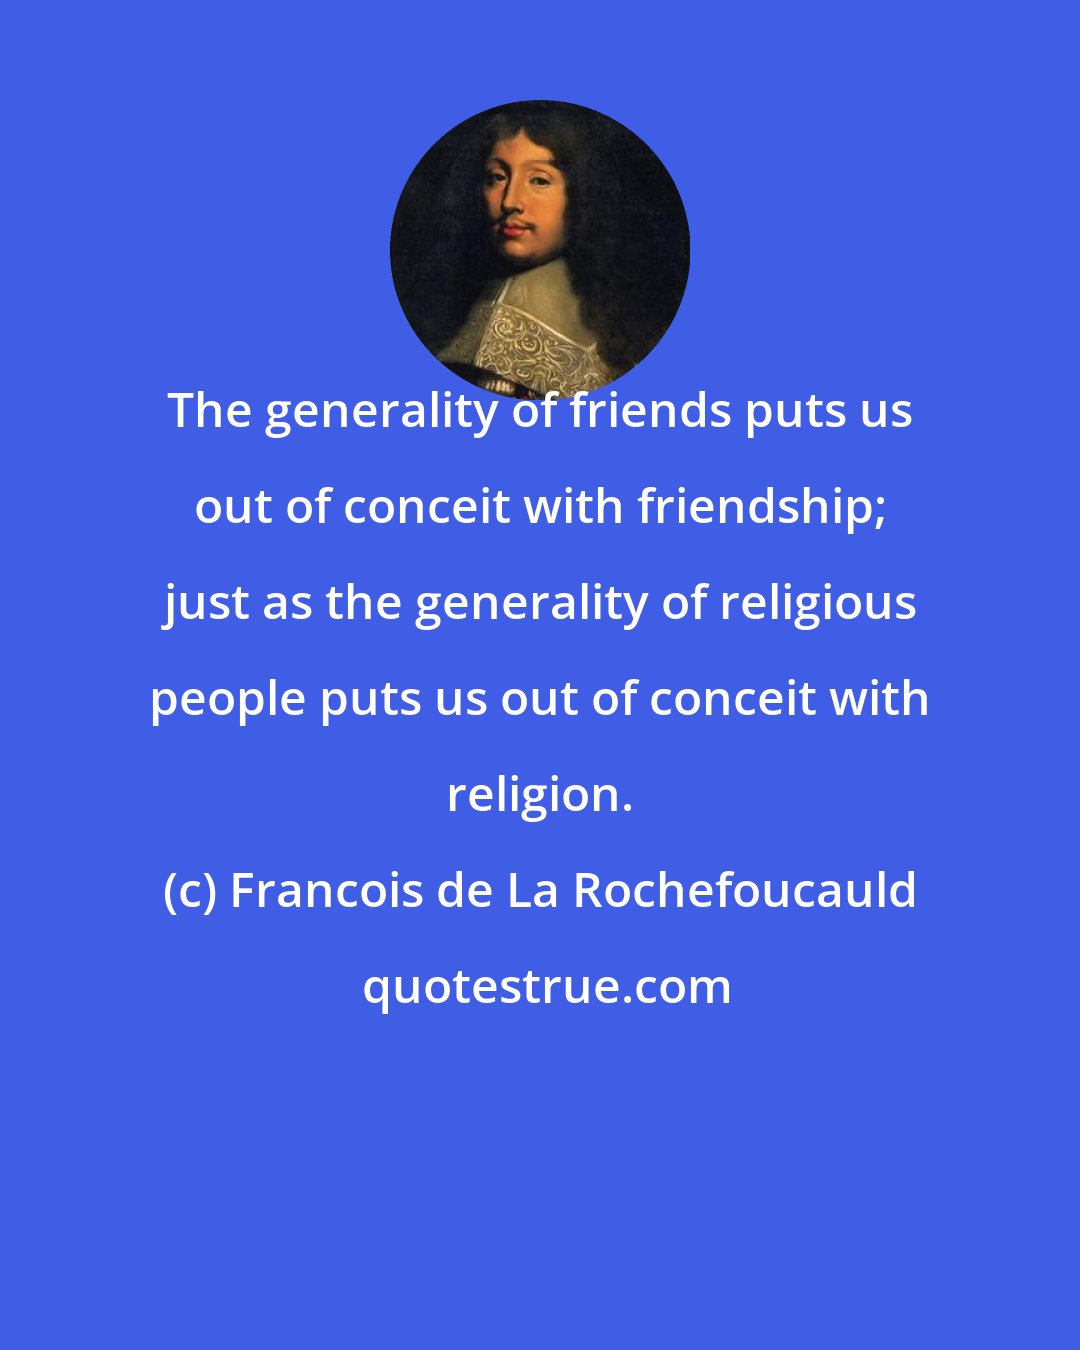 Francois de La Rochefoucauld: The generality of friends puts us out of conceit with friendship; just as the generality of religious people puts us out of conceit with religion.